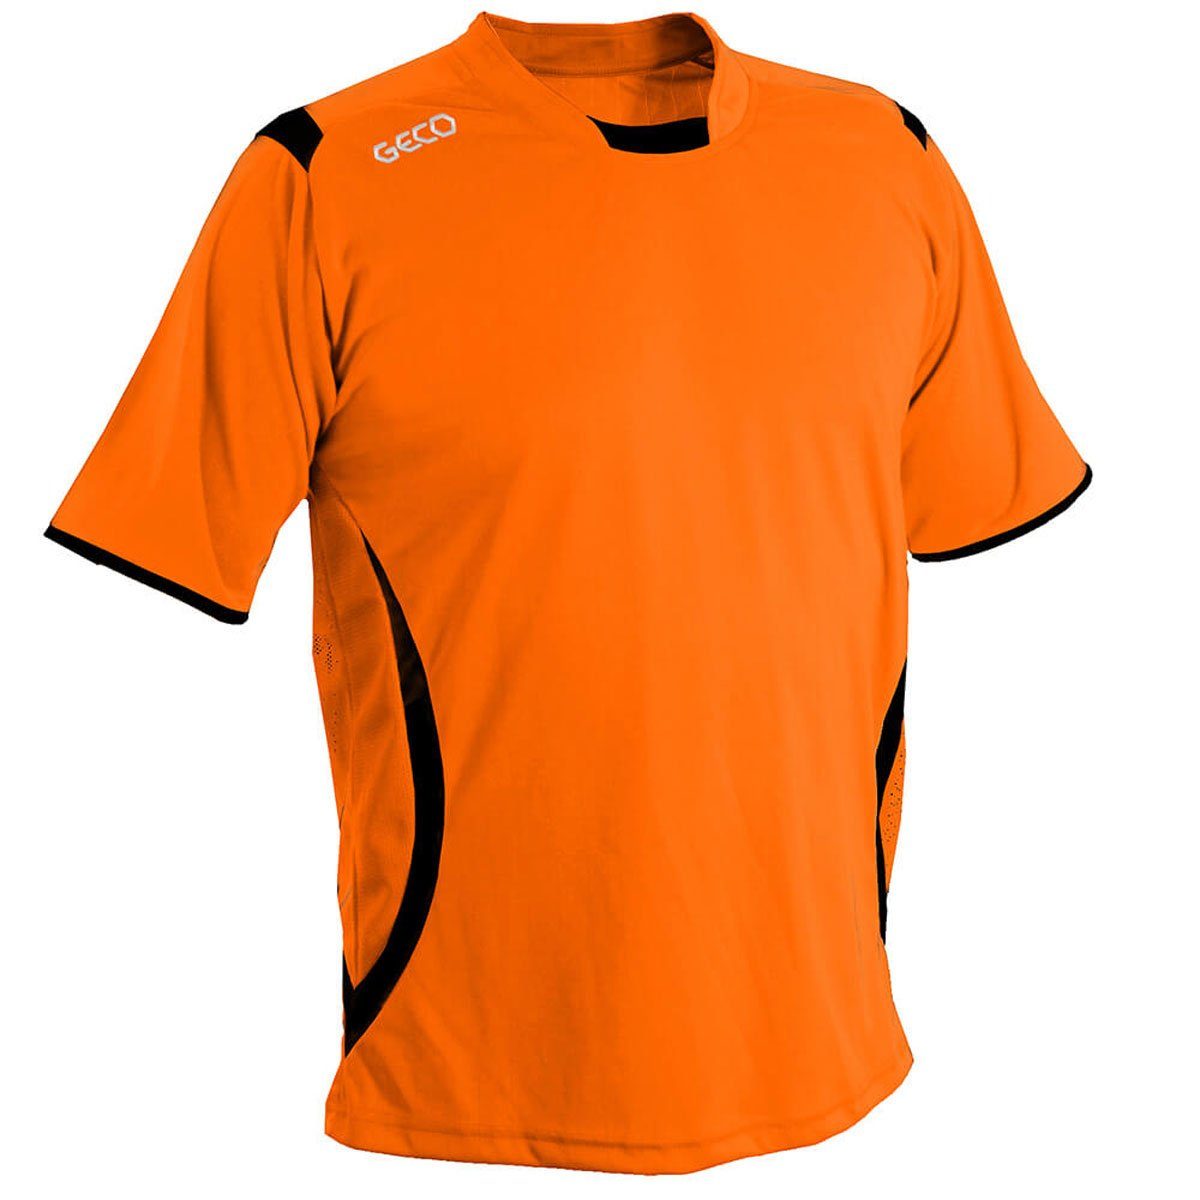 Geco Geco Fußballtrikot seitliche orange/schwarz Trikot zweifarbig Mesh kurzarm Levante Fußballtrikot Sportswear Einsätze Fußball